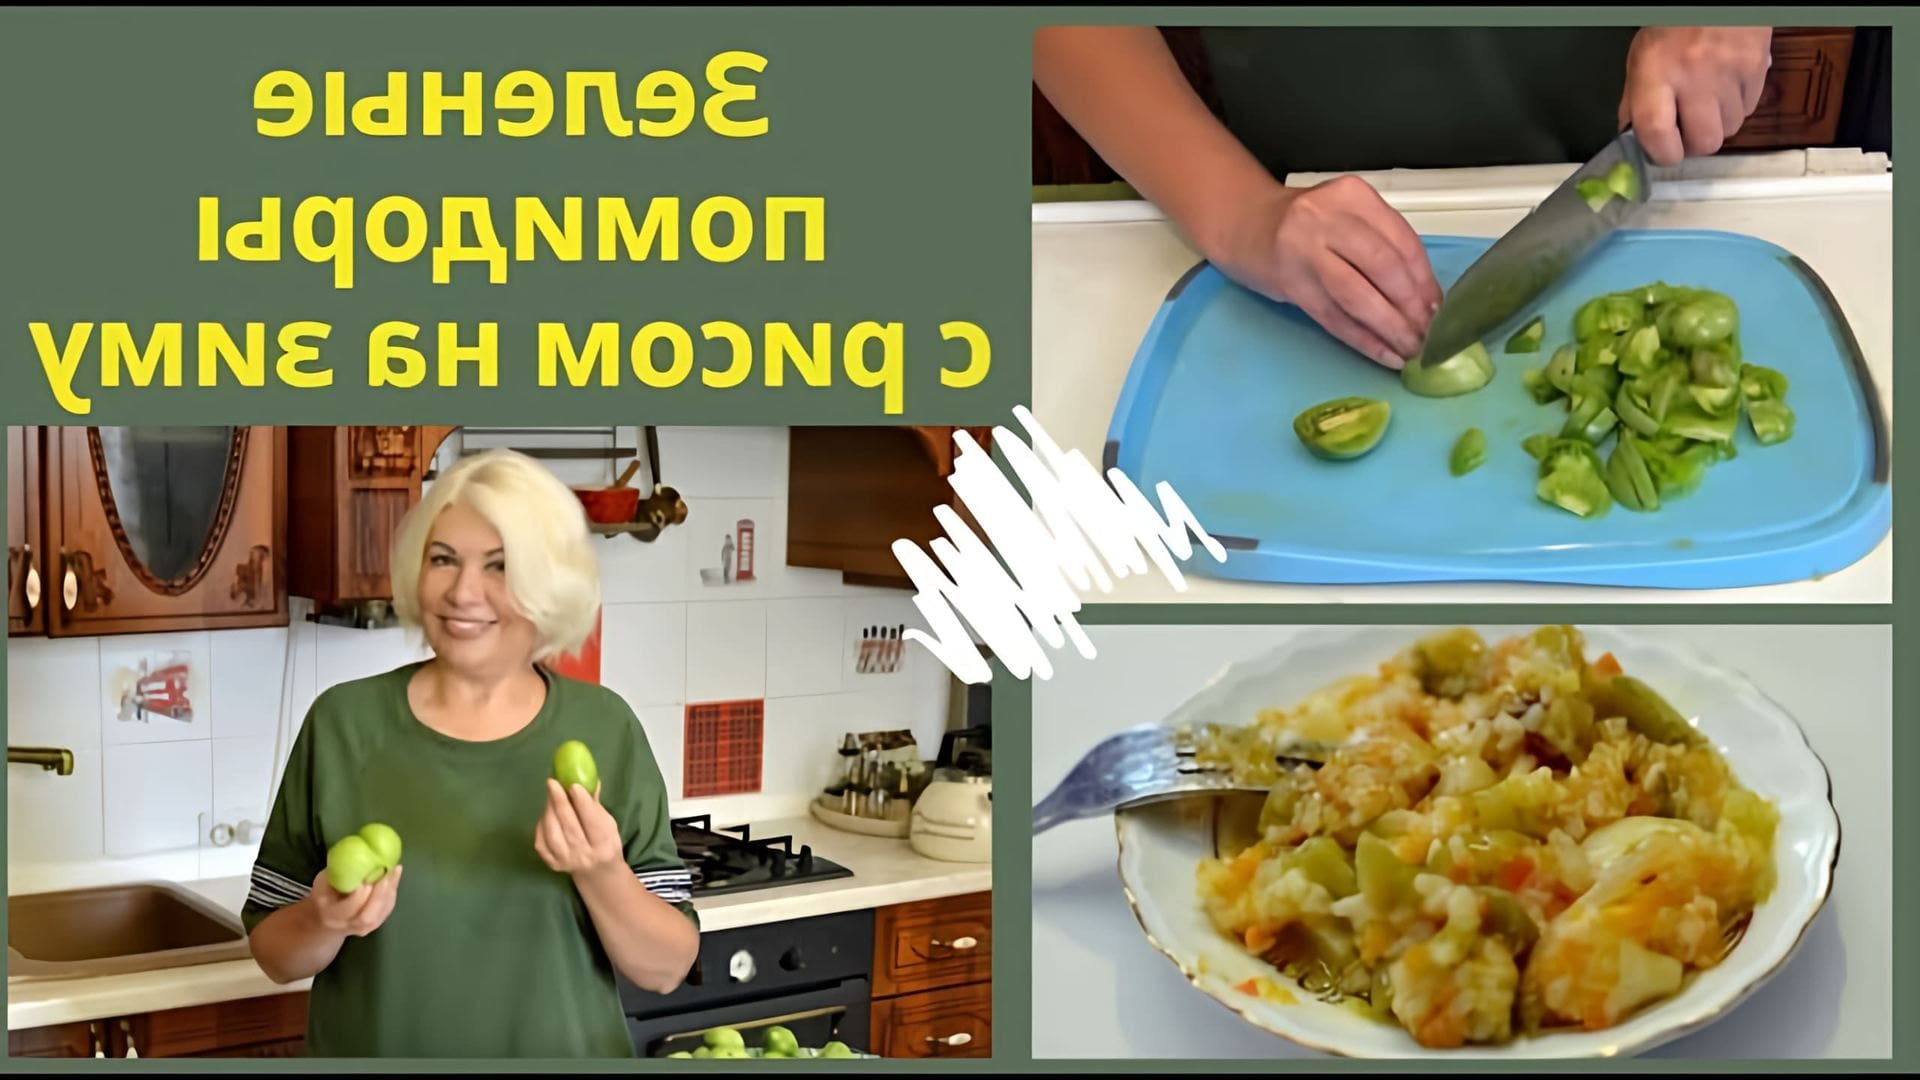 В этом видео Татьяна показывает, как приготовить салат из зеленых помидоров с рисом